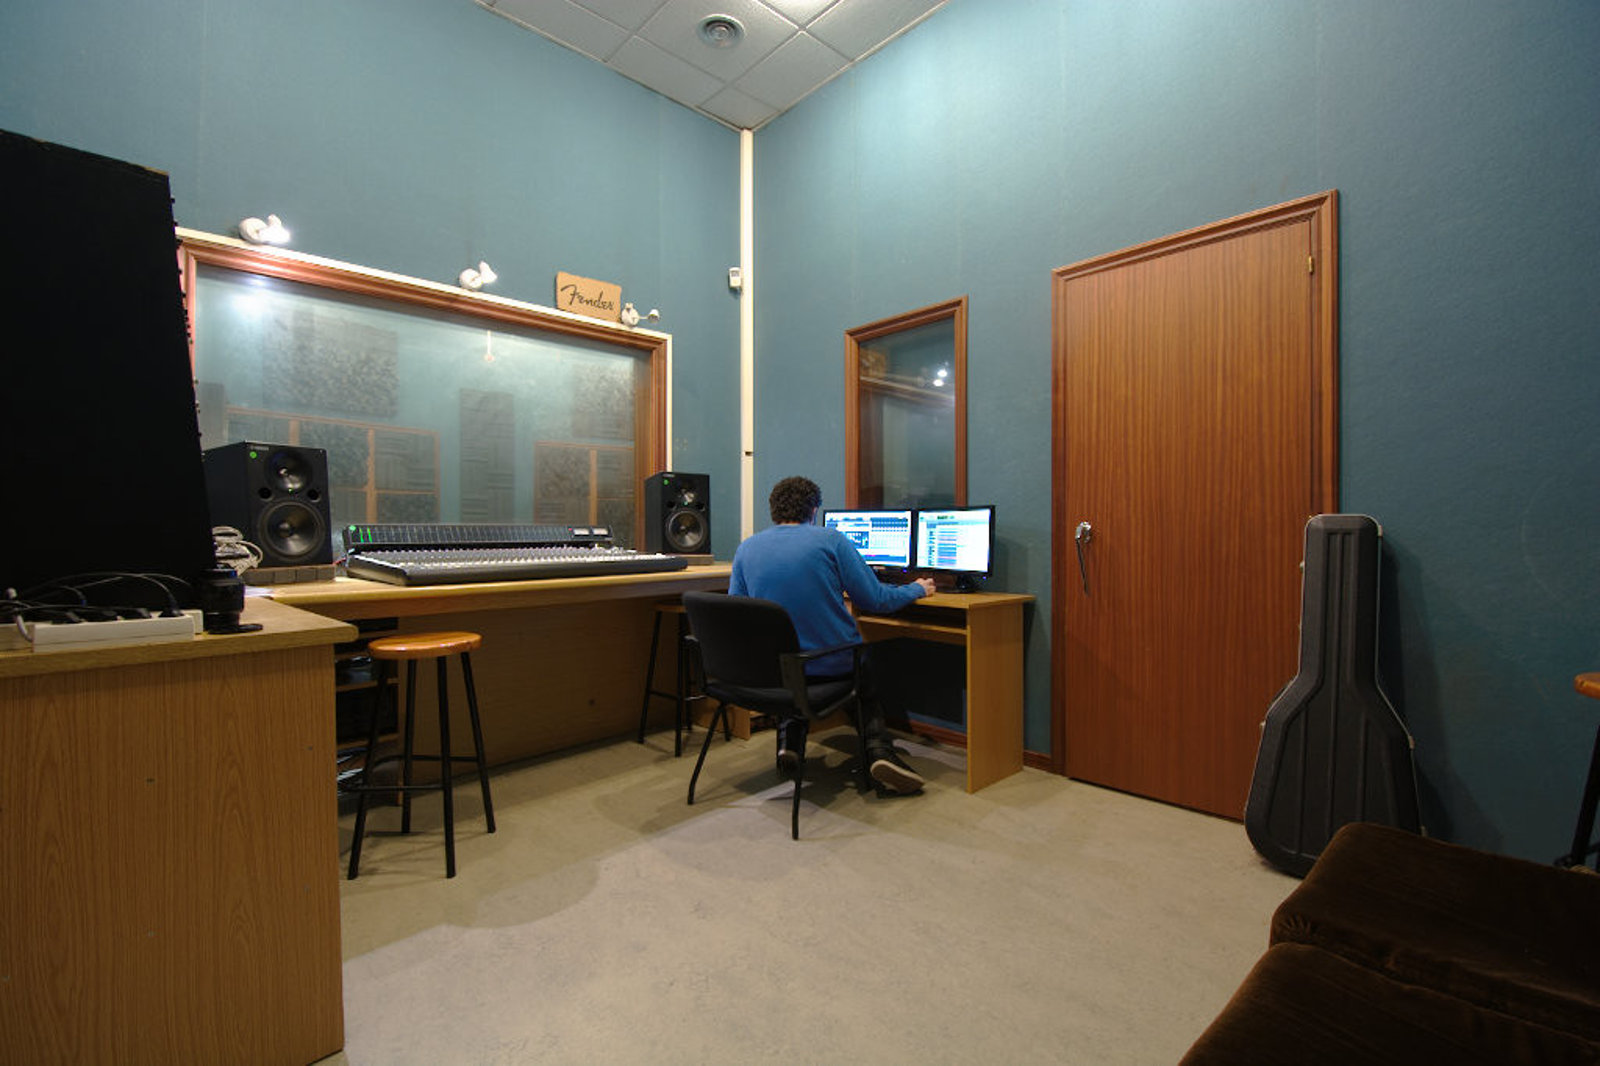 Escuela de Imagen y Sonido de Vigo EISV. Instalaciones de grabación de audio - Estudio de grabación digital - Control de grabación